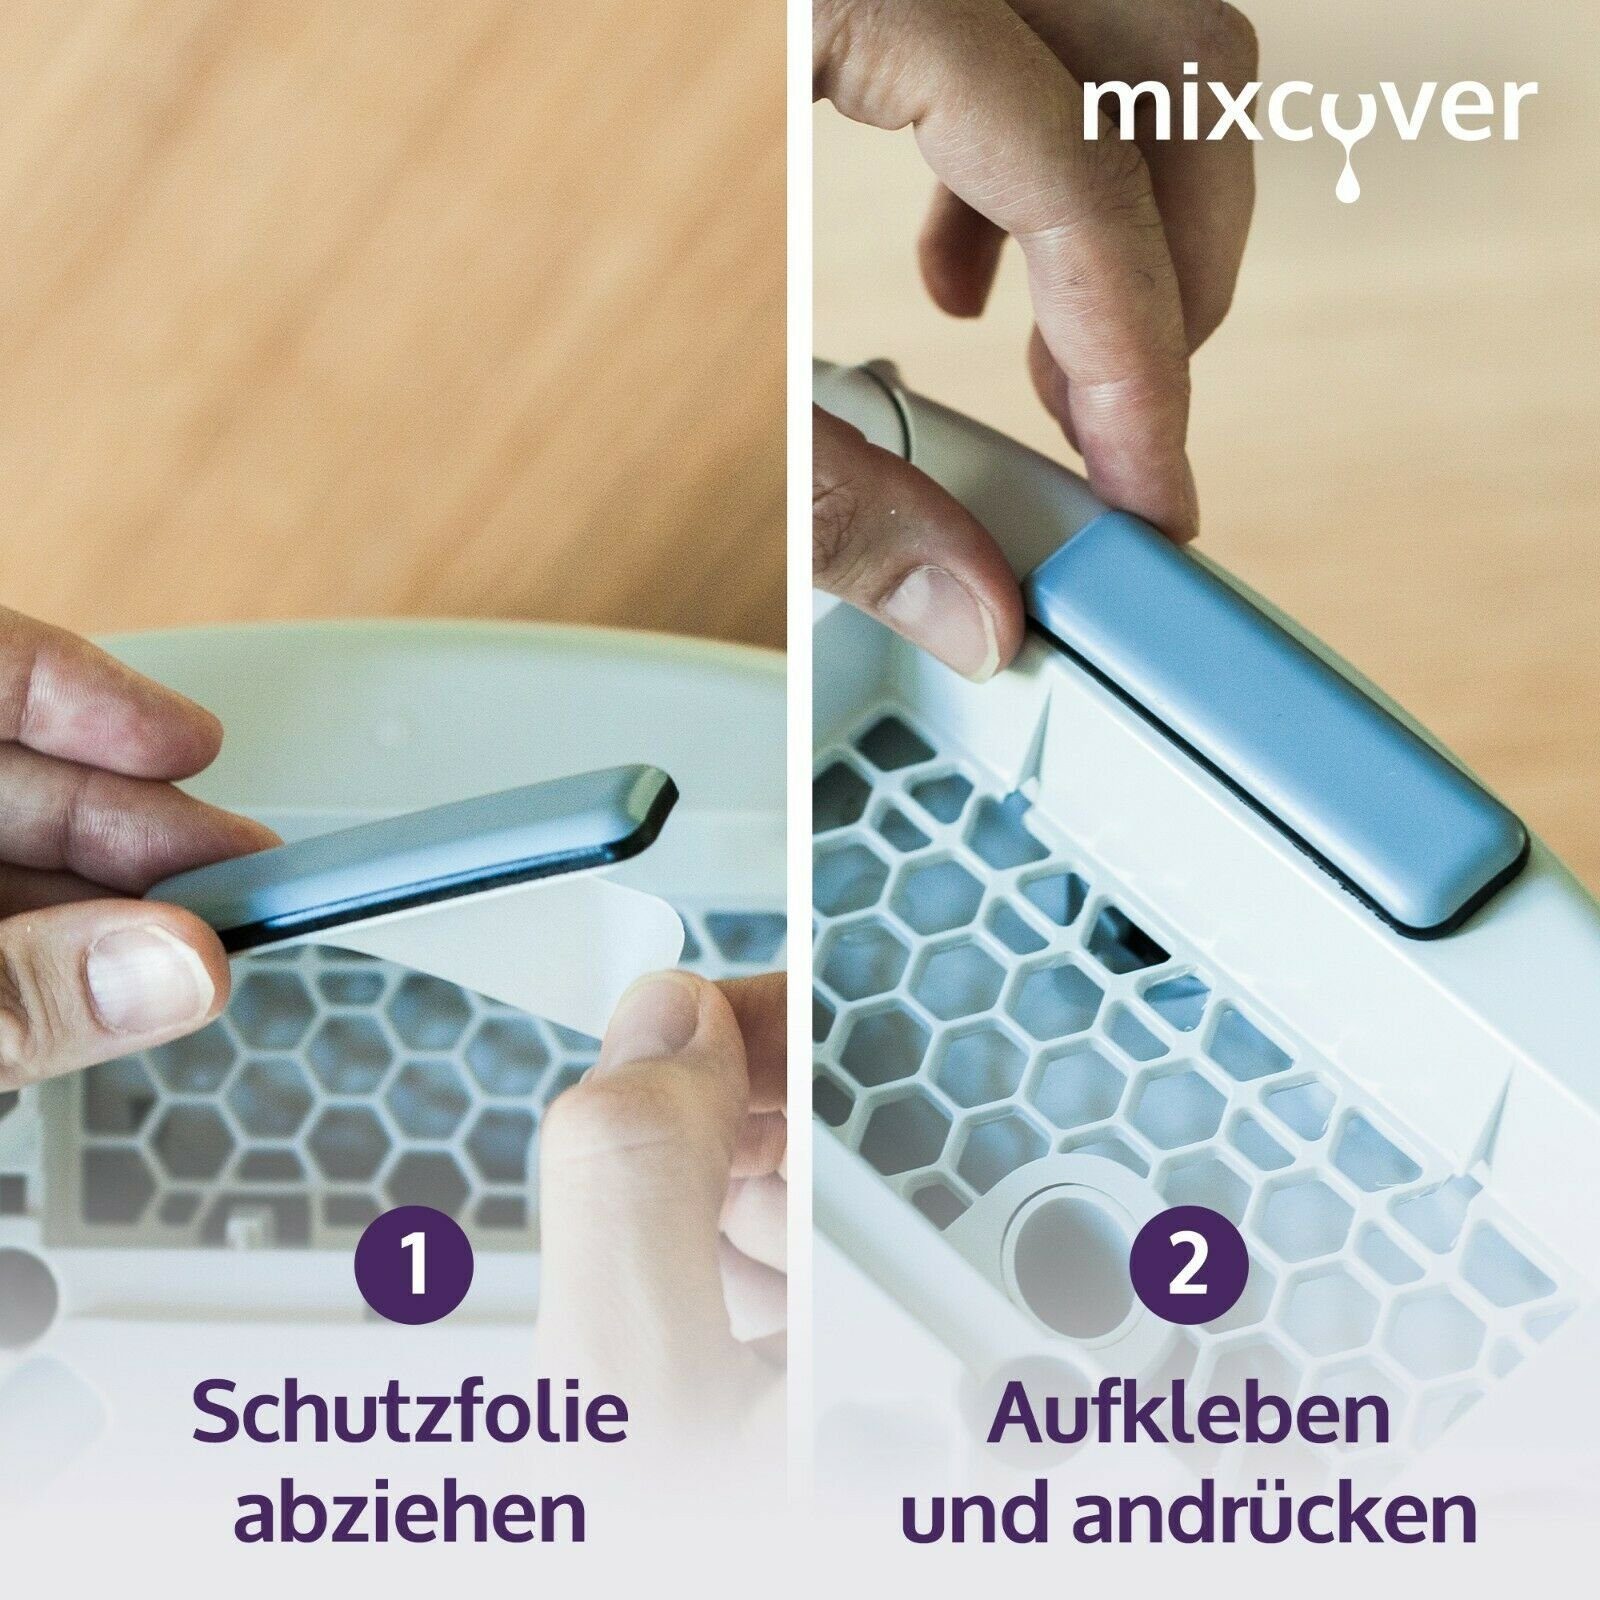 Mixcover Küchenmaschinen-Adapter mixcover Thermomix TM6 unsichtbare den & Set für 1er Gleiter/Slider TM5